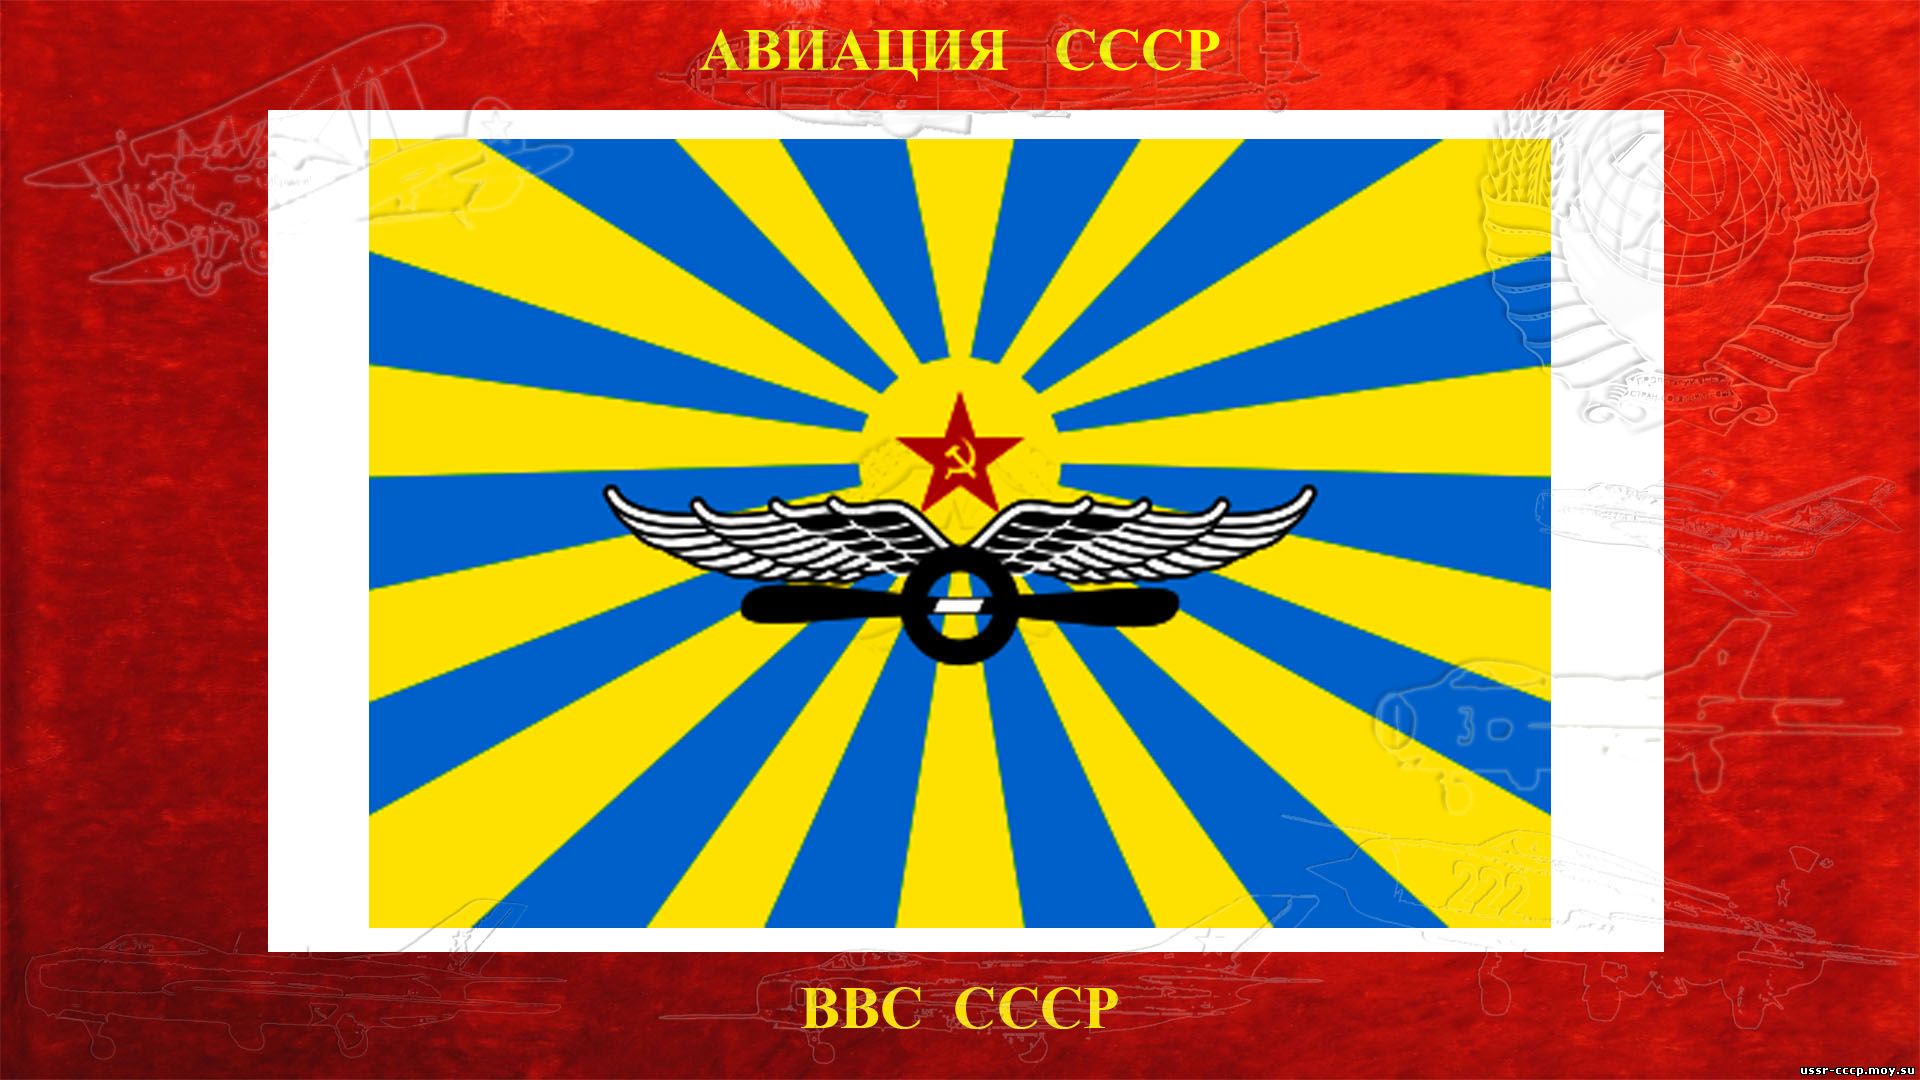 Военно-воздушные силы СССР (повествование)